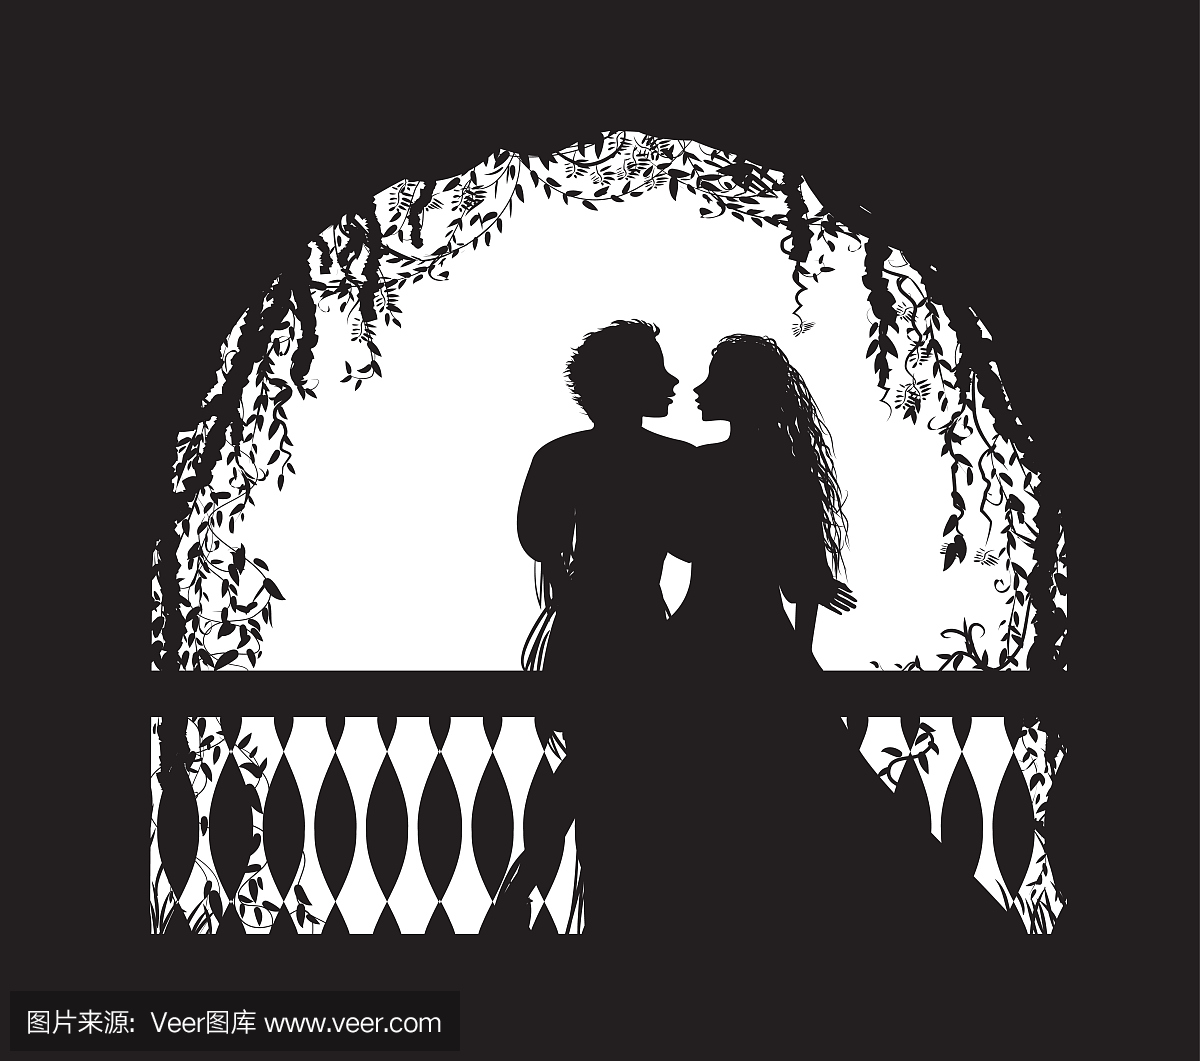 莎士比亚的戏剧罗密欧与朱丽叶在阳台上,浪漫